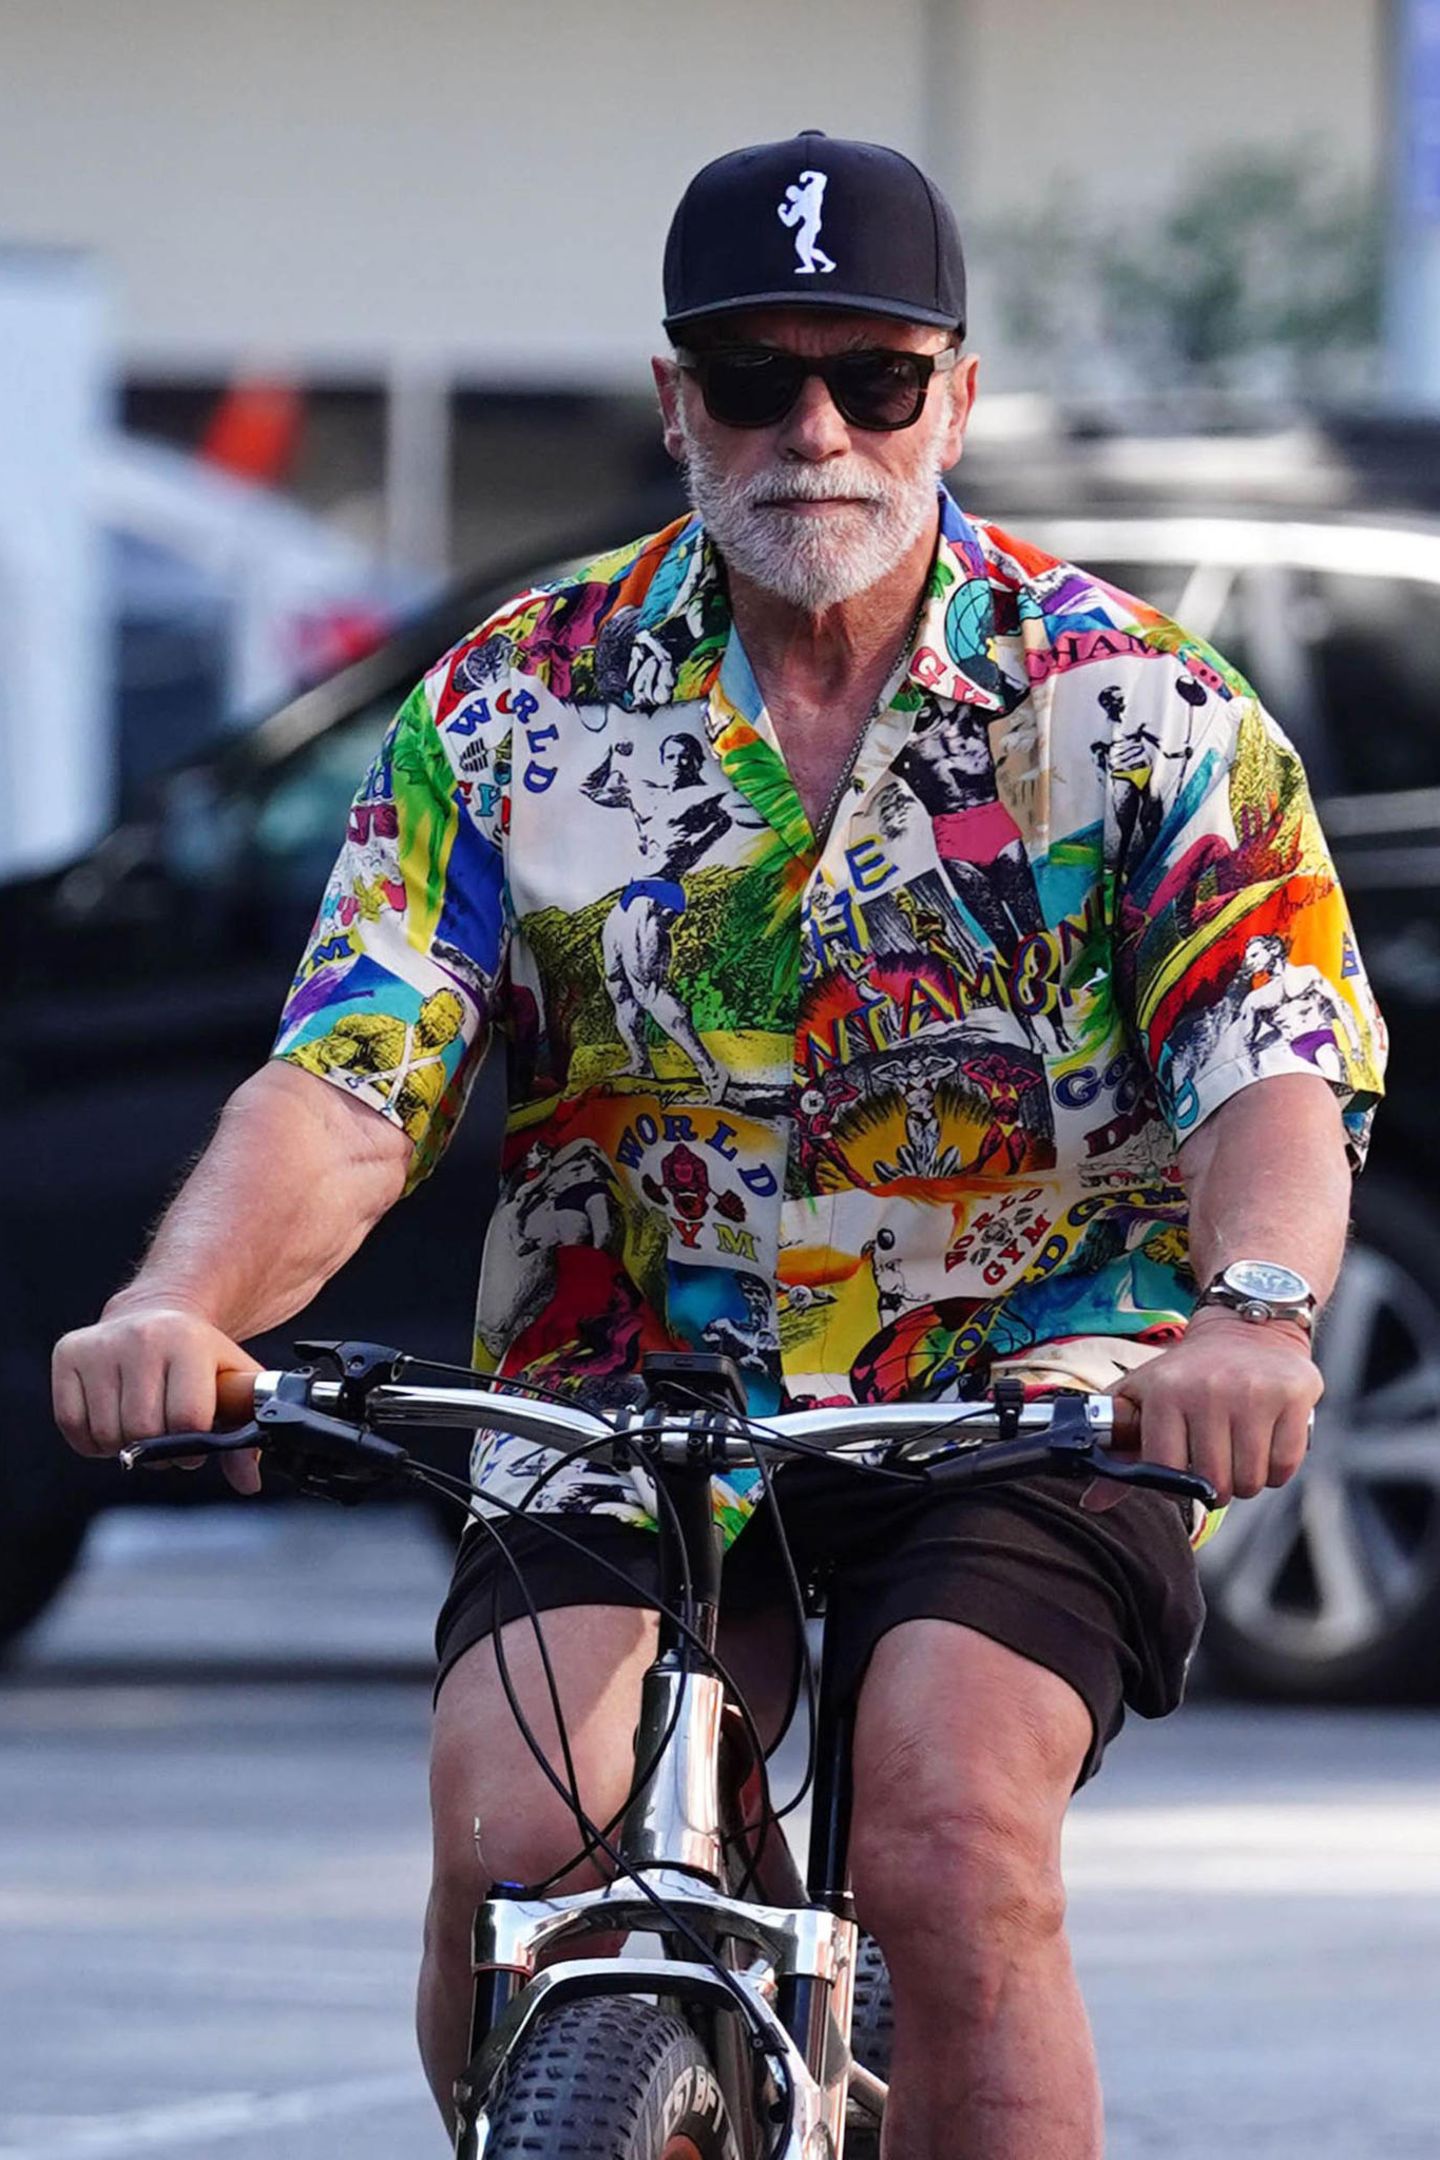 Rad-Fan Arnold Schwarzenegger dreht ganz regelmäßig seine Runden in L.A., doch so farbenfroh sieht man ihn selten. Nicht nur auf der Schirmmütze ist ein Bodybilder-Image zu sehen, das ganze Shirt ist mit bekannten Bodybuildern bedruckt. Auf seiner rechten Seite prangt ganz prominent ein schwarz-weiß Foto aus seiner eigenen aktiven Zeit.